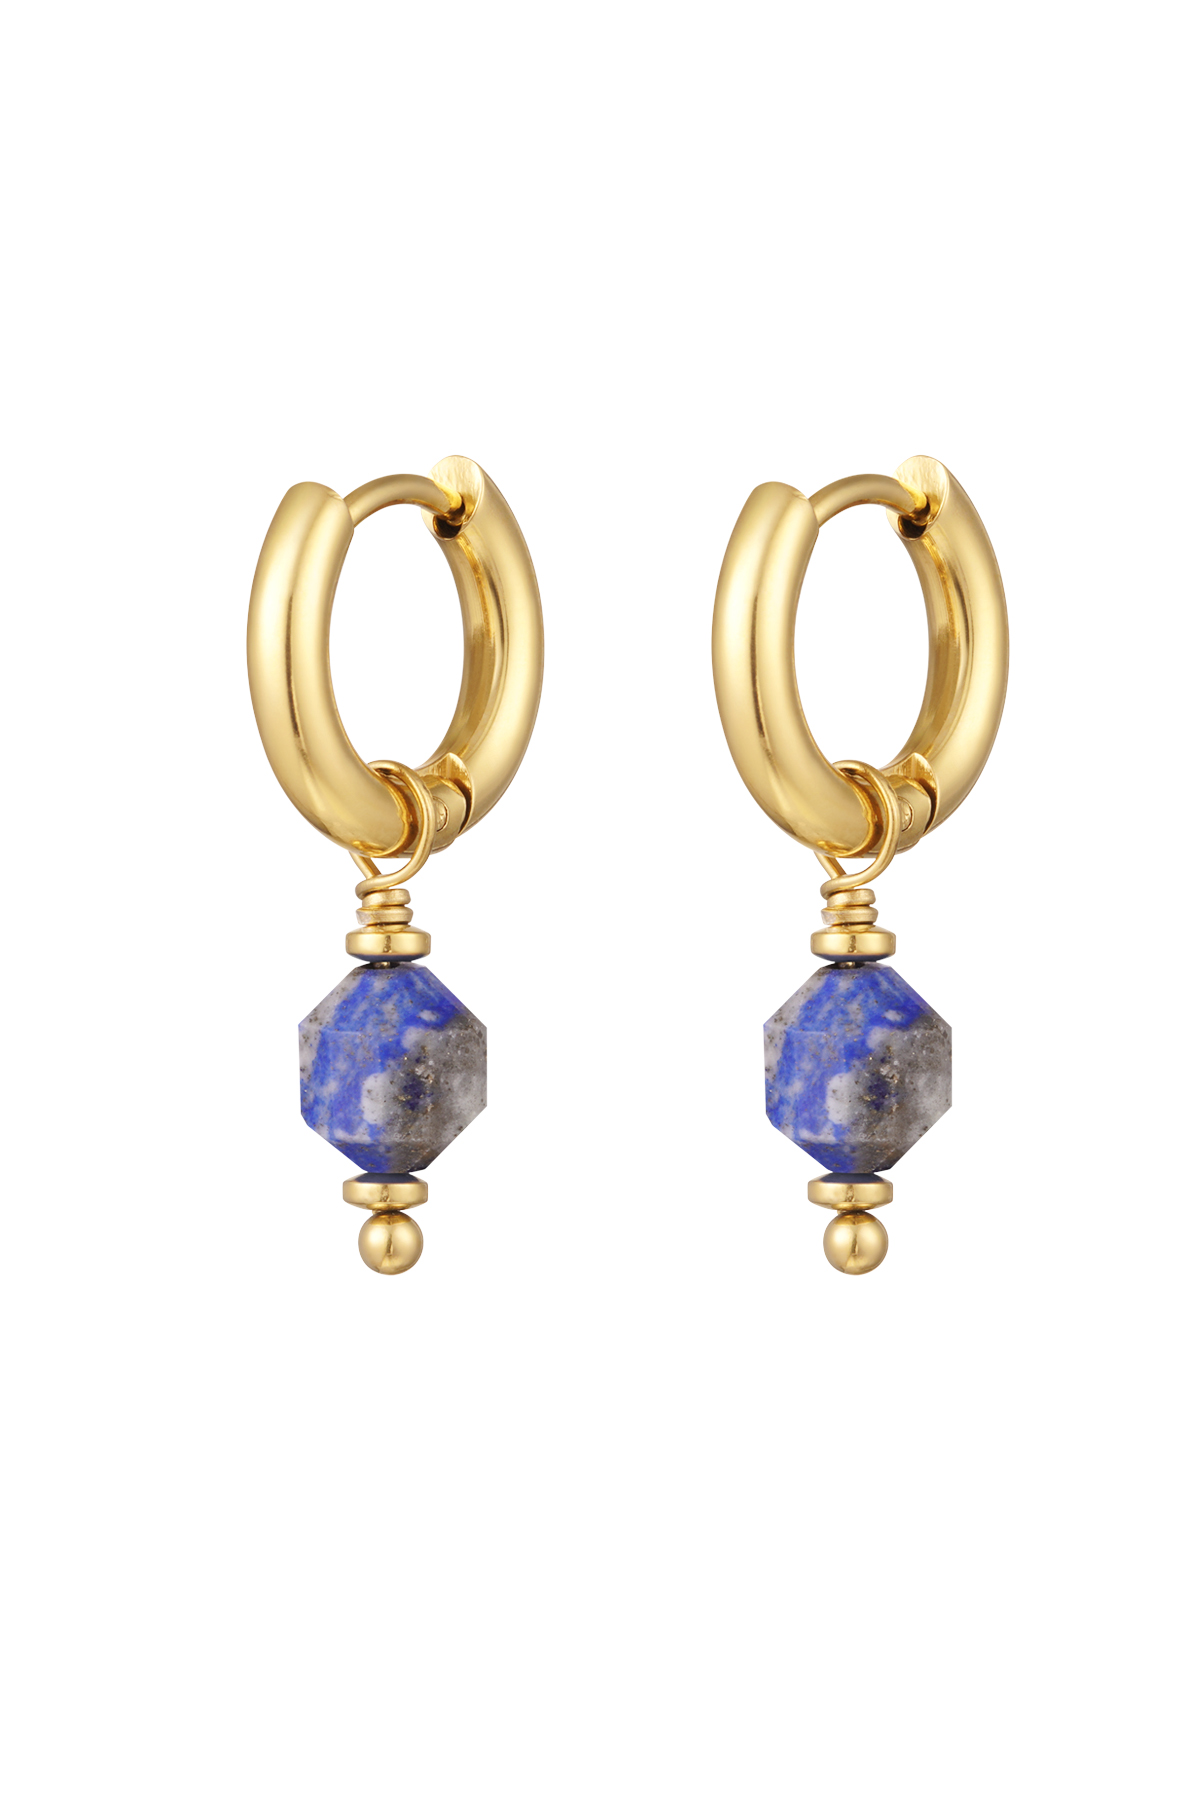 Or / Boucles d'oreilles avec pierre de septembre - or/bleu Image11